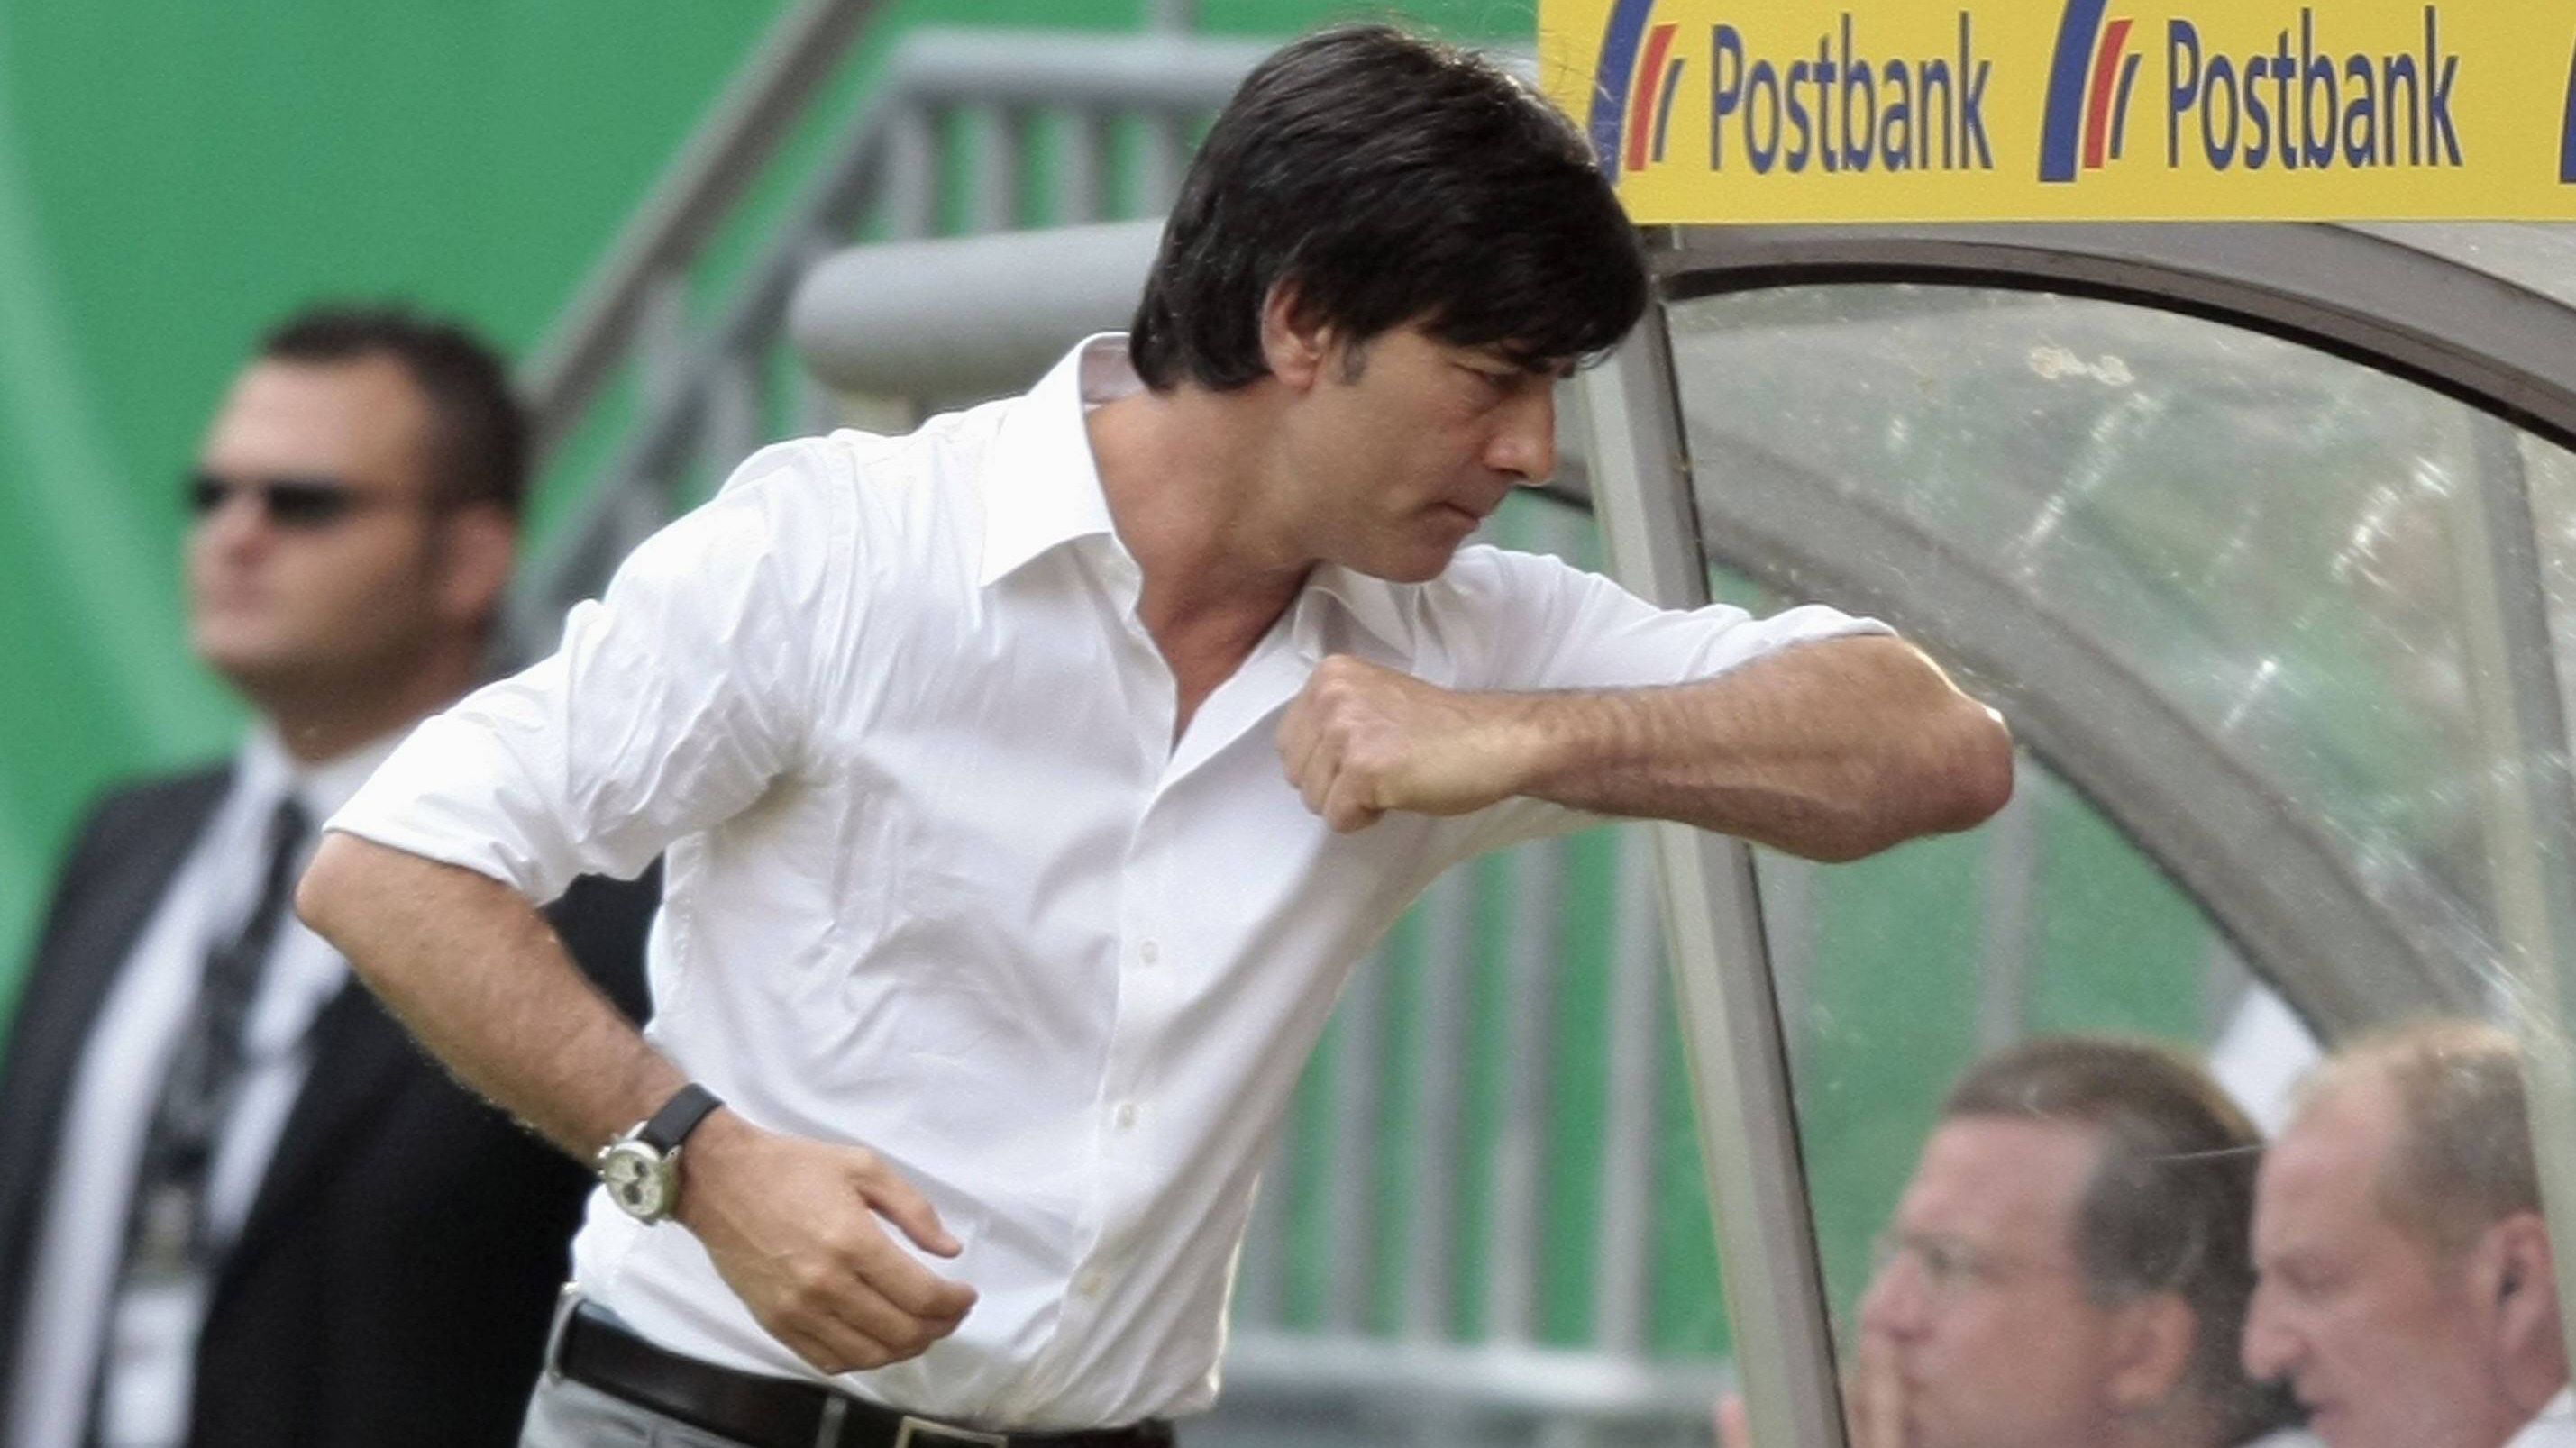 
                <strong>Die wahren Kenner</strong><br>
                Mit dabei war auch ein junger Bundestrainer Joachim Löw. Der ärgerte sich 2008 in Kaiserslautern über die Leistung seiner Elf im Freundschaftsspiel gegen die Weißrussen. Die deutlich schmalere Brust blieb bei der Wut-Geste allerdings von Quetschungen der Arterie verschont, nur der Stolz war etwas angeknackst nach dem 2:2 - auch weil die DFB-Elf eine 2:0-Halbzeitführung verspielt hatte. 
              